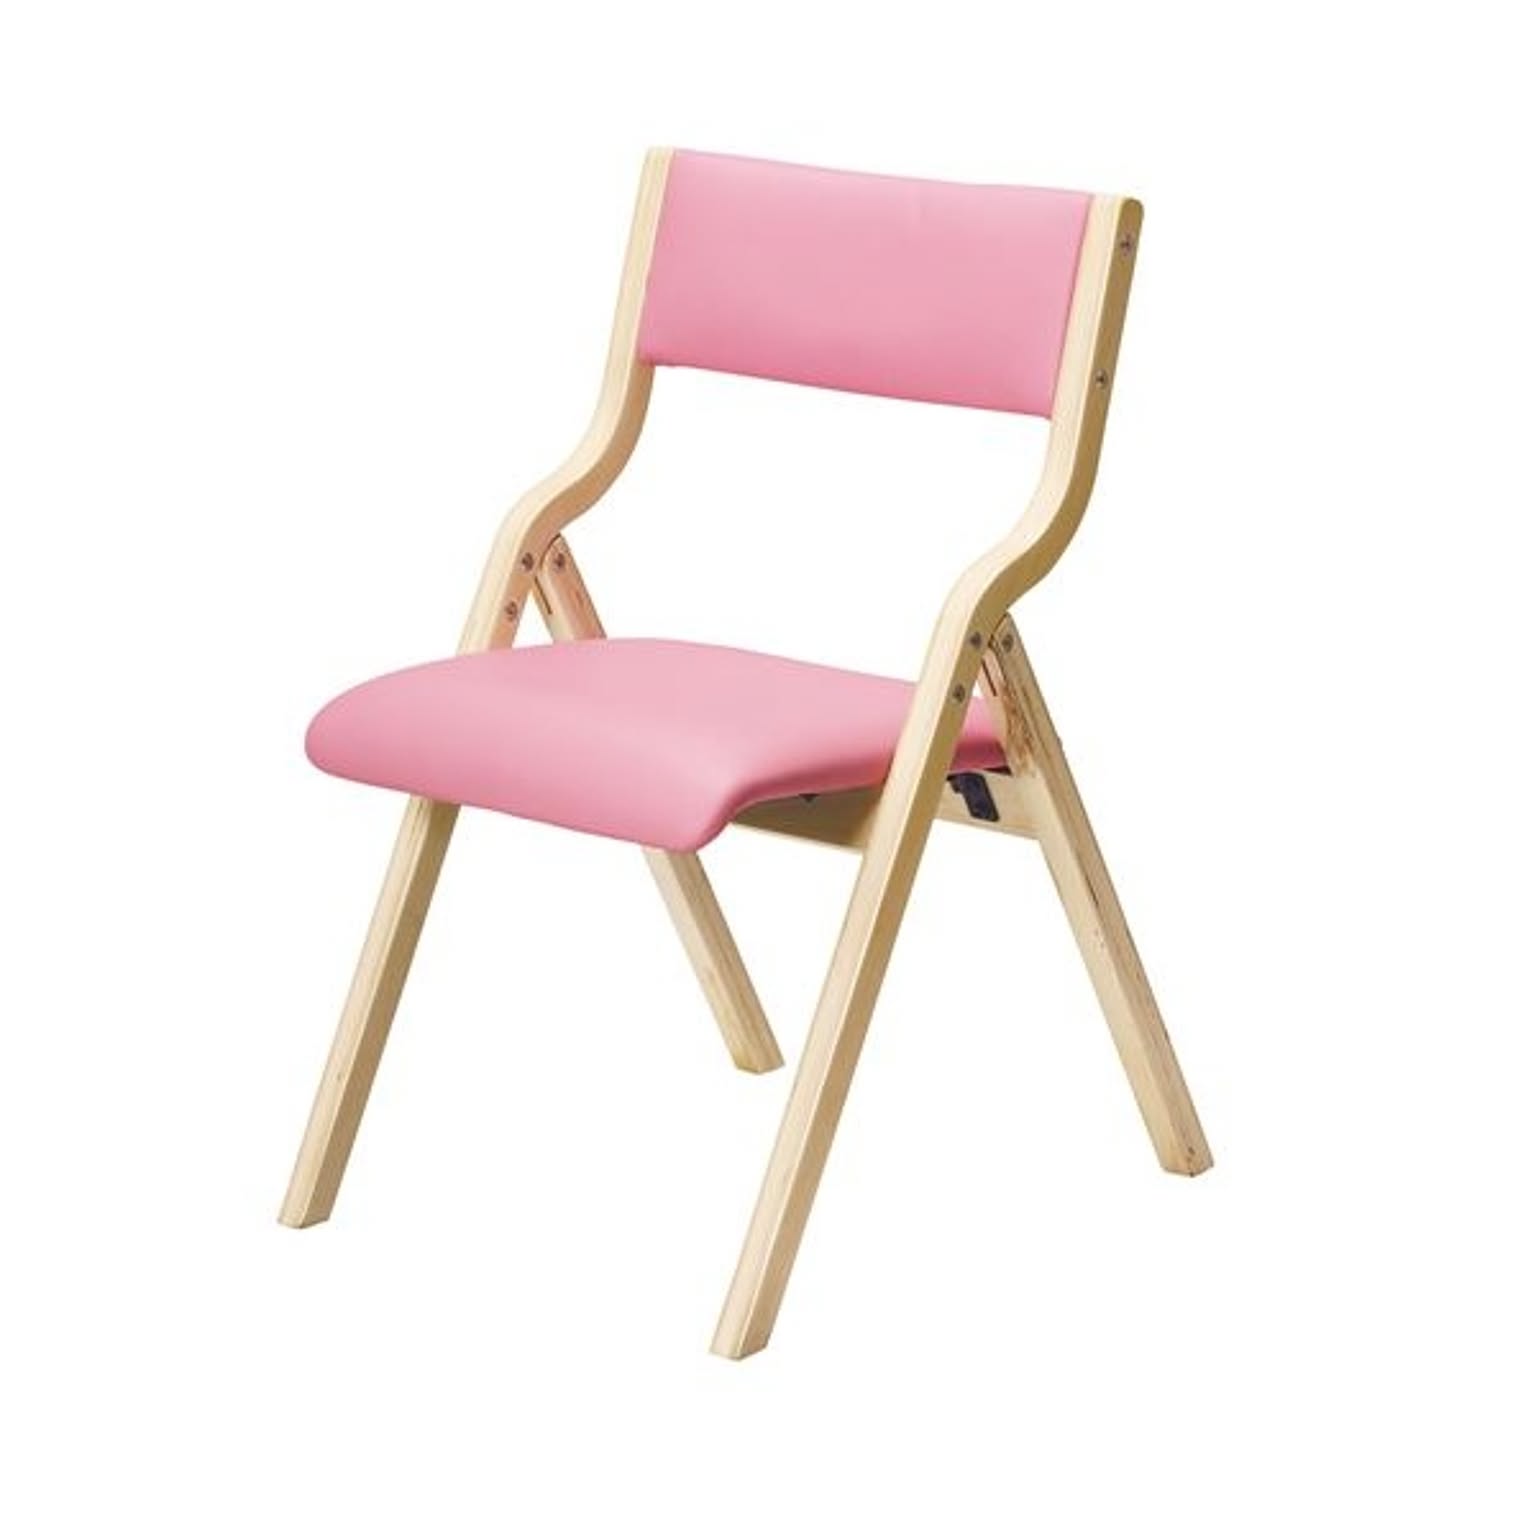 折りたたみ椅子/フォールディングチェア 【ピンク】 幅475mm 合皮/合成皮革 〔リビング ダイニング〕 完成品【代引不可】